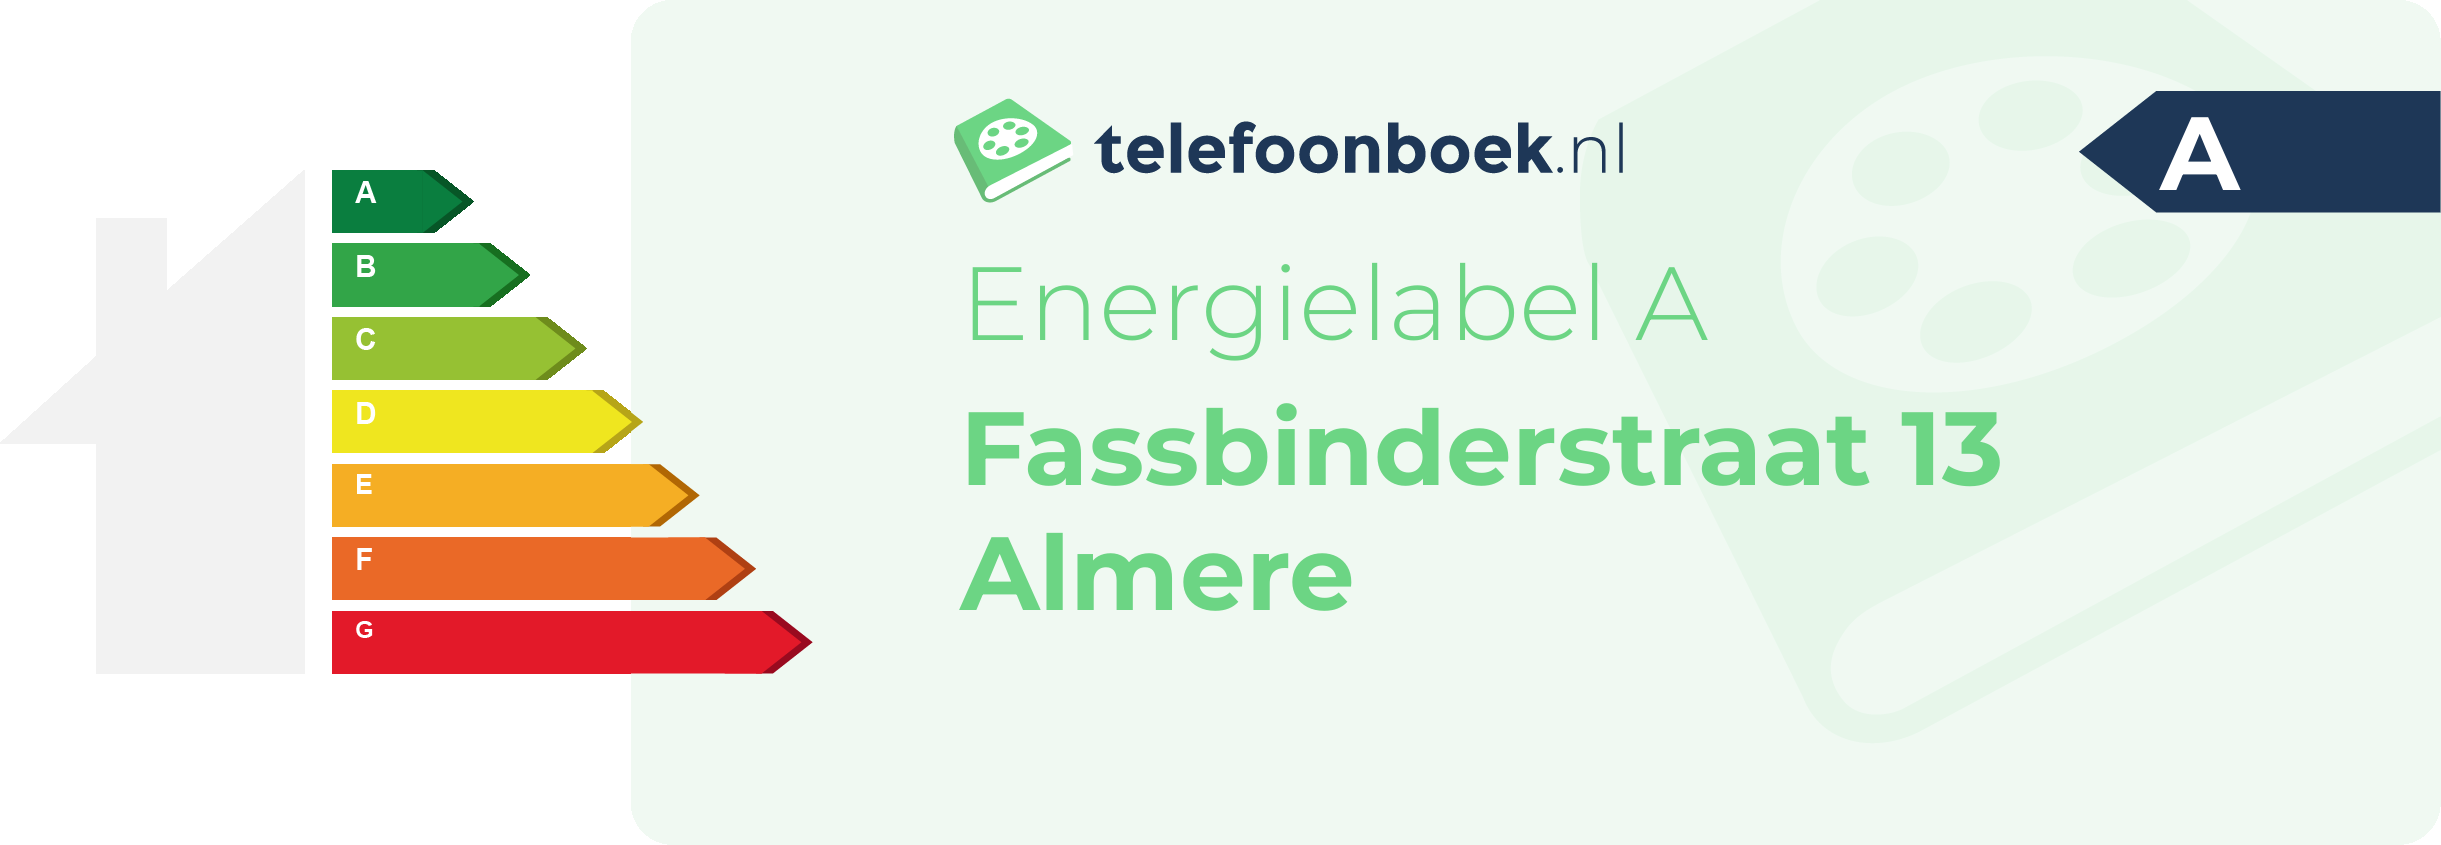 Energielabel Fassbinderstraat 13 Almere